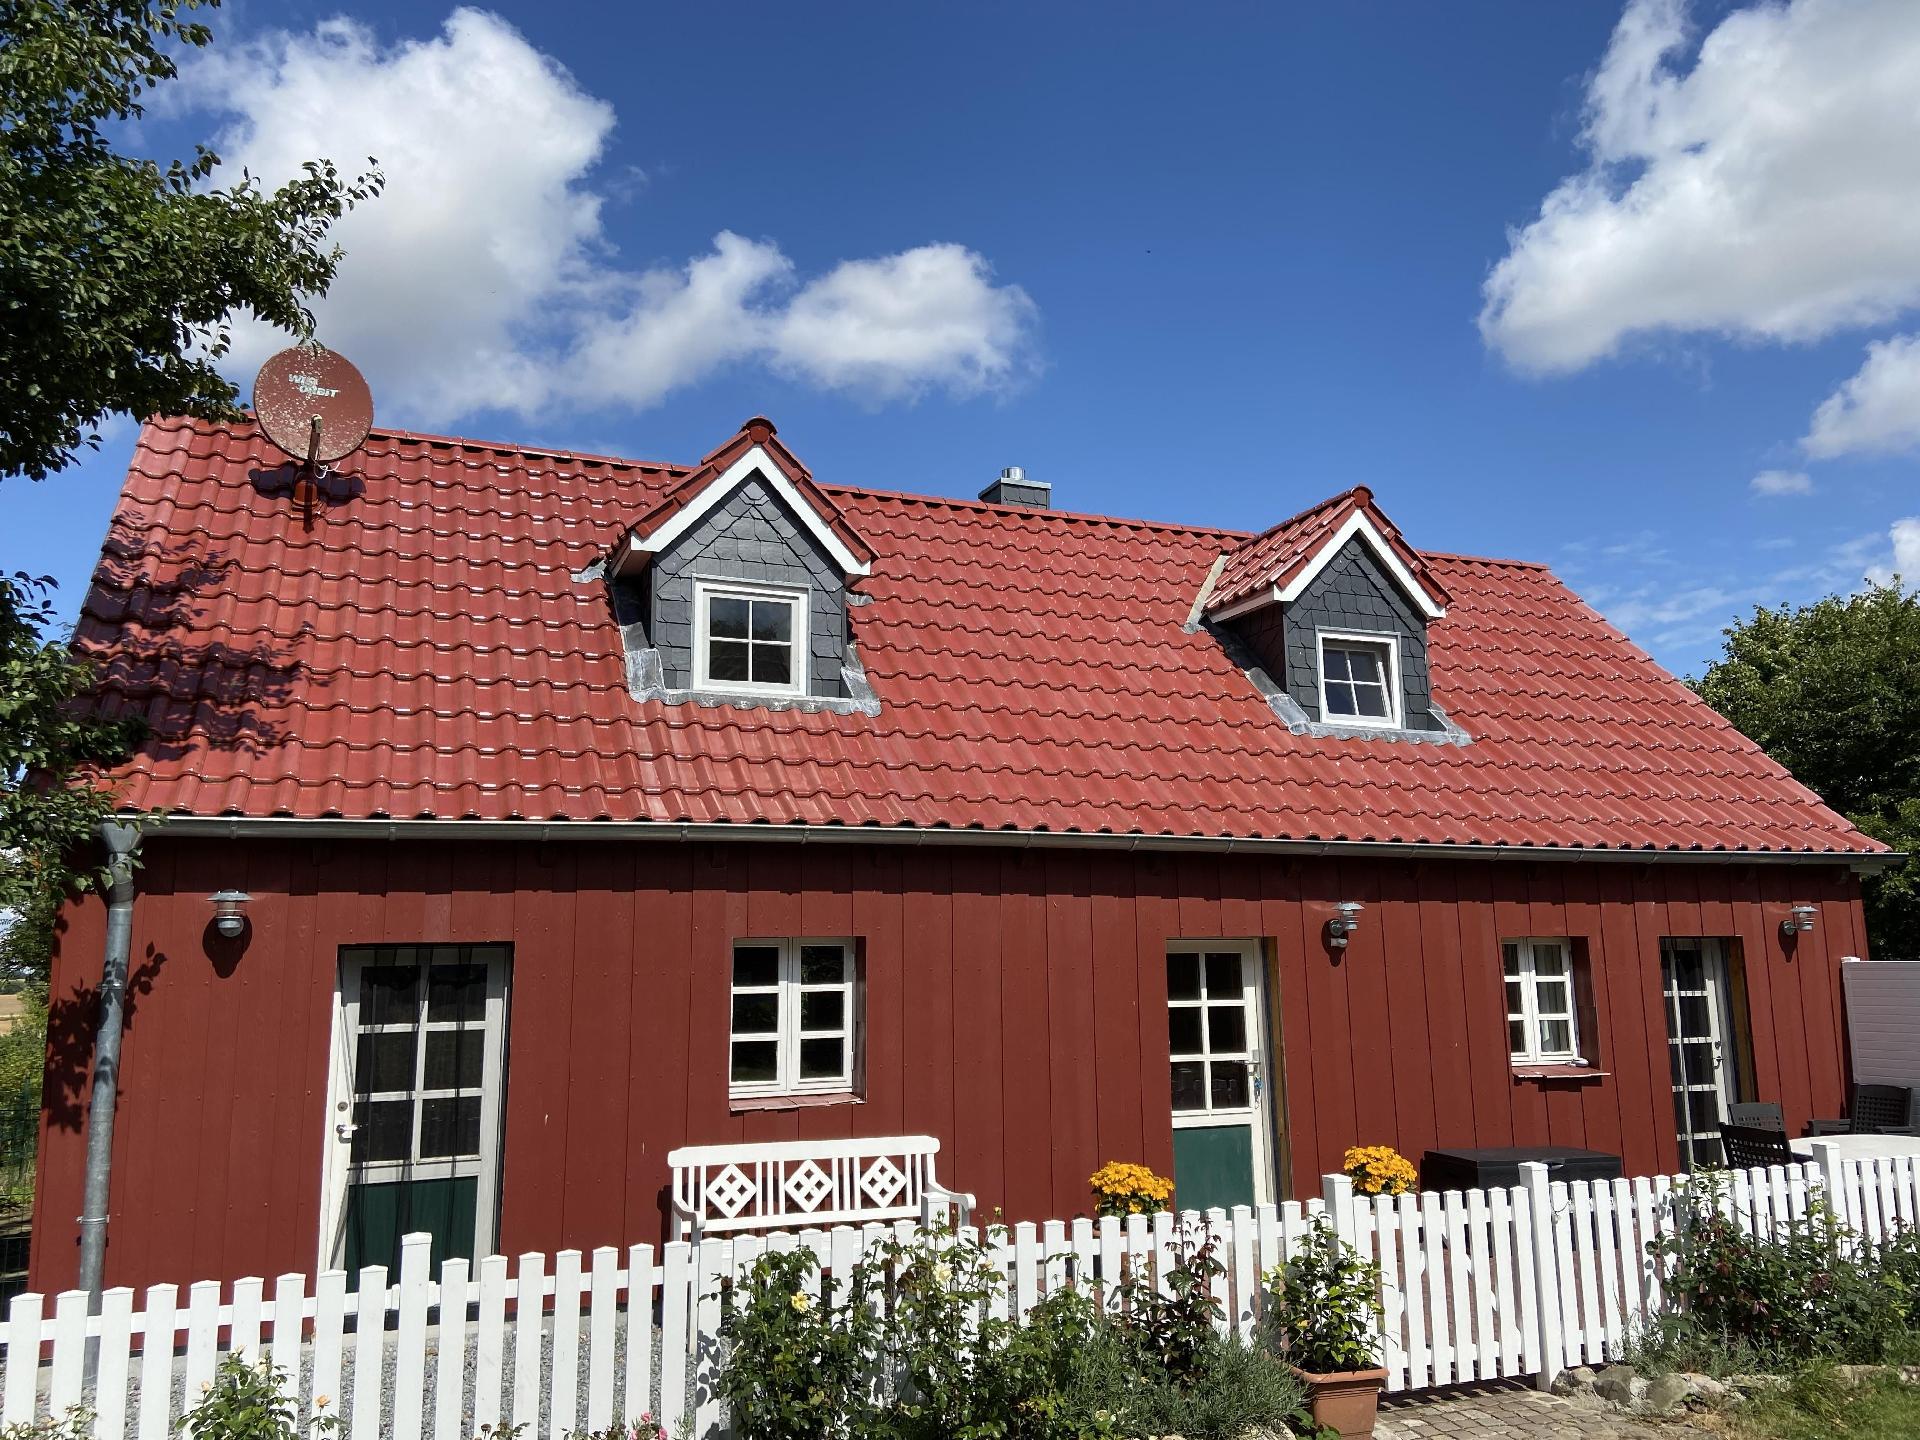 Ferienhaus in Zimmert mit Terrasse, Grill und Gart  in Schleswig Holstein